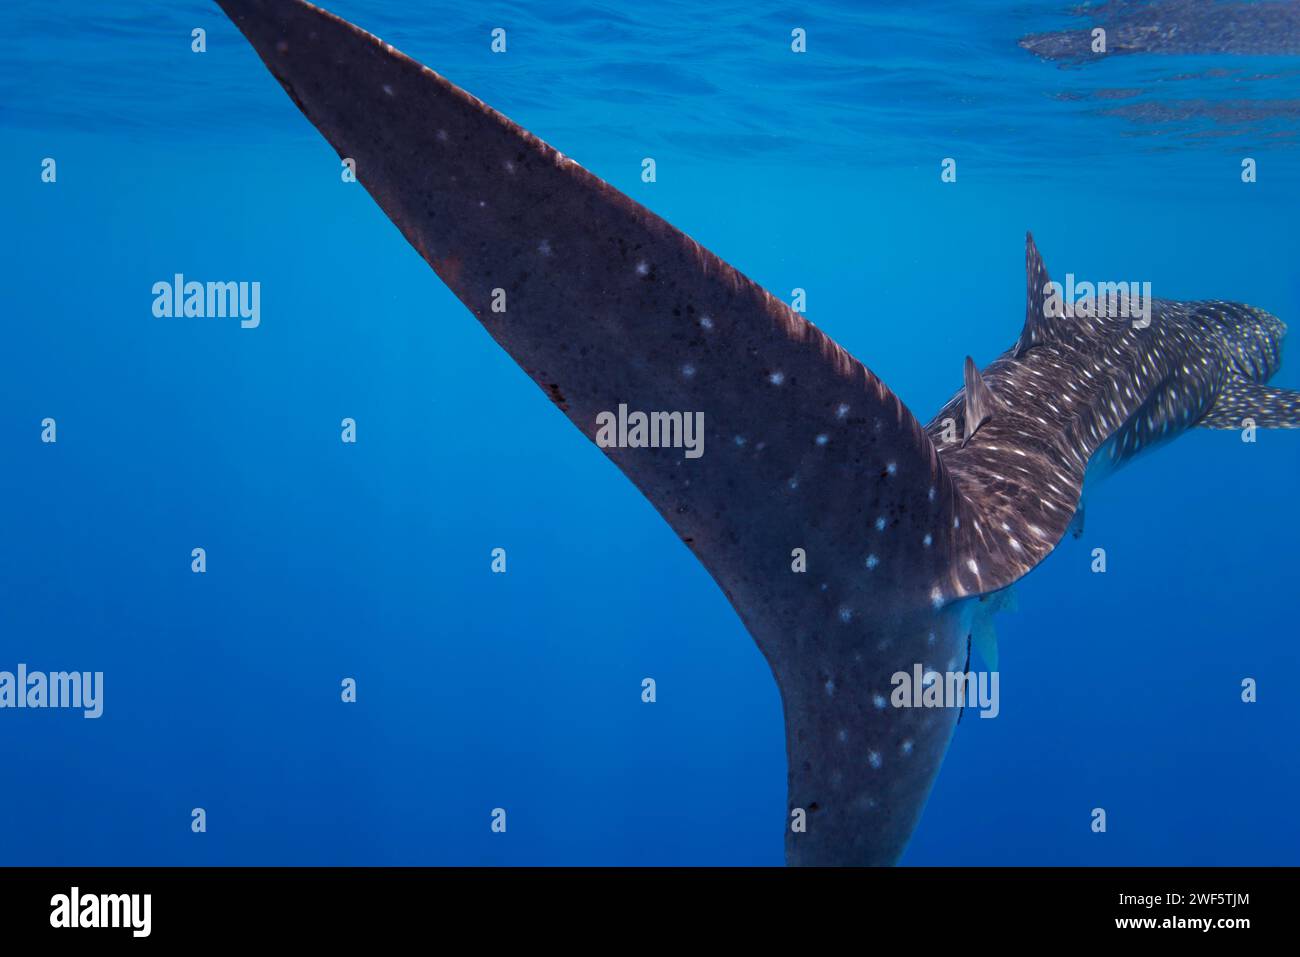 Le requin baleine Rhiniodon typus est la plus grande espèce de poisson au monde. Baucau, Timor-Leste Banque D'Images